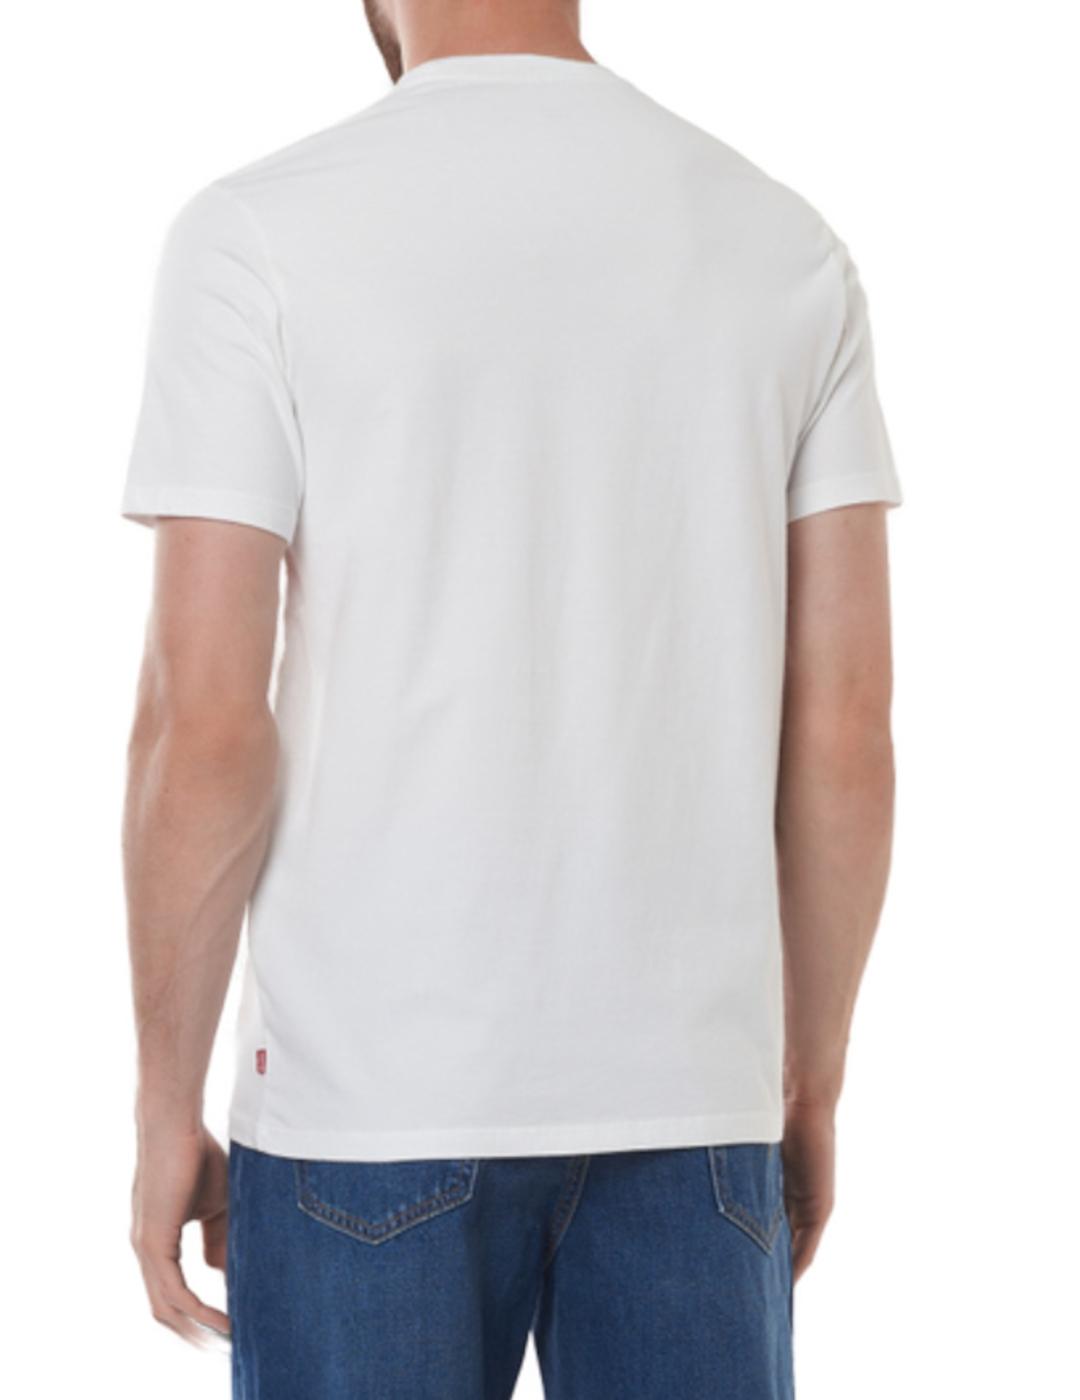 Camiseta Levis Housemark Graphic blanco -z